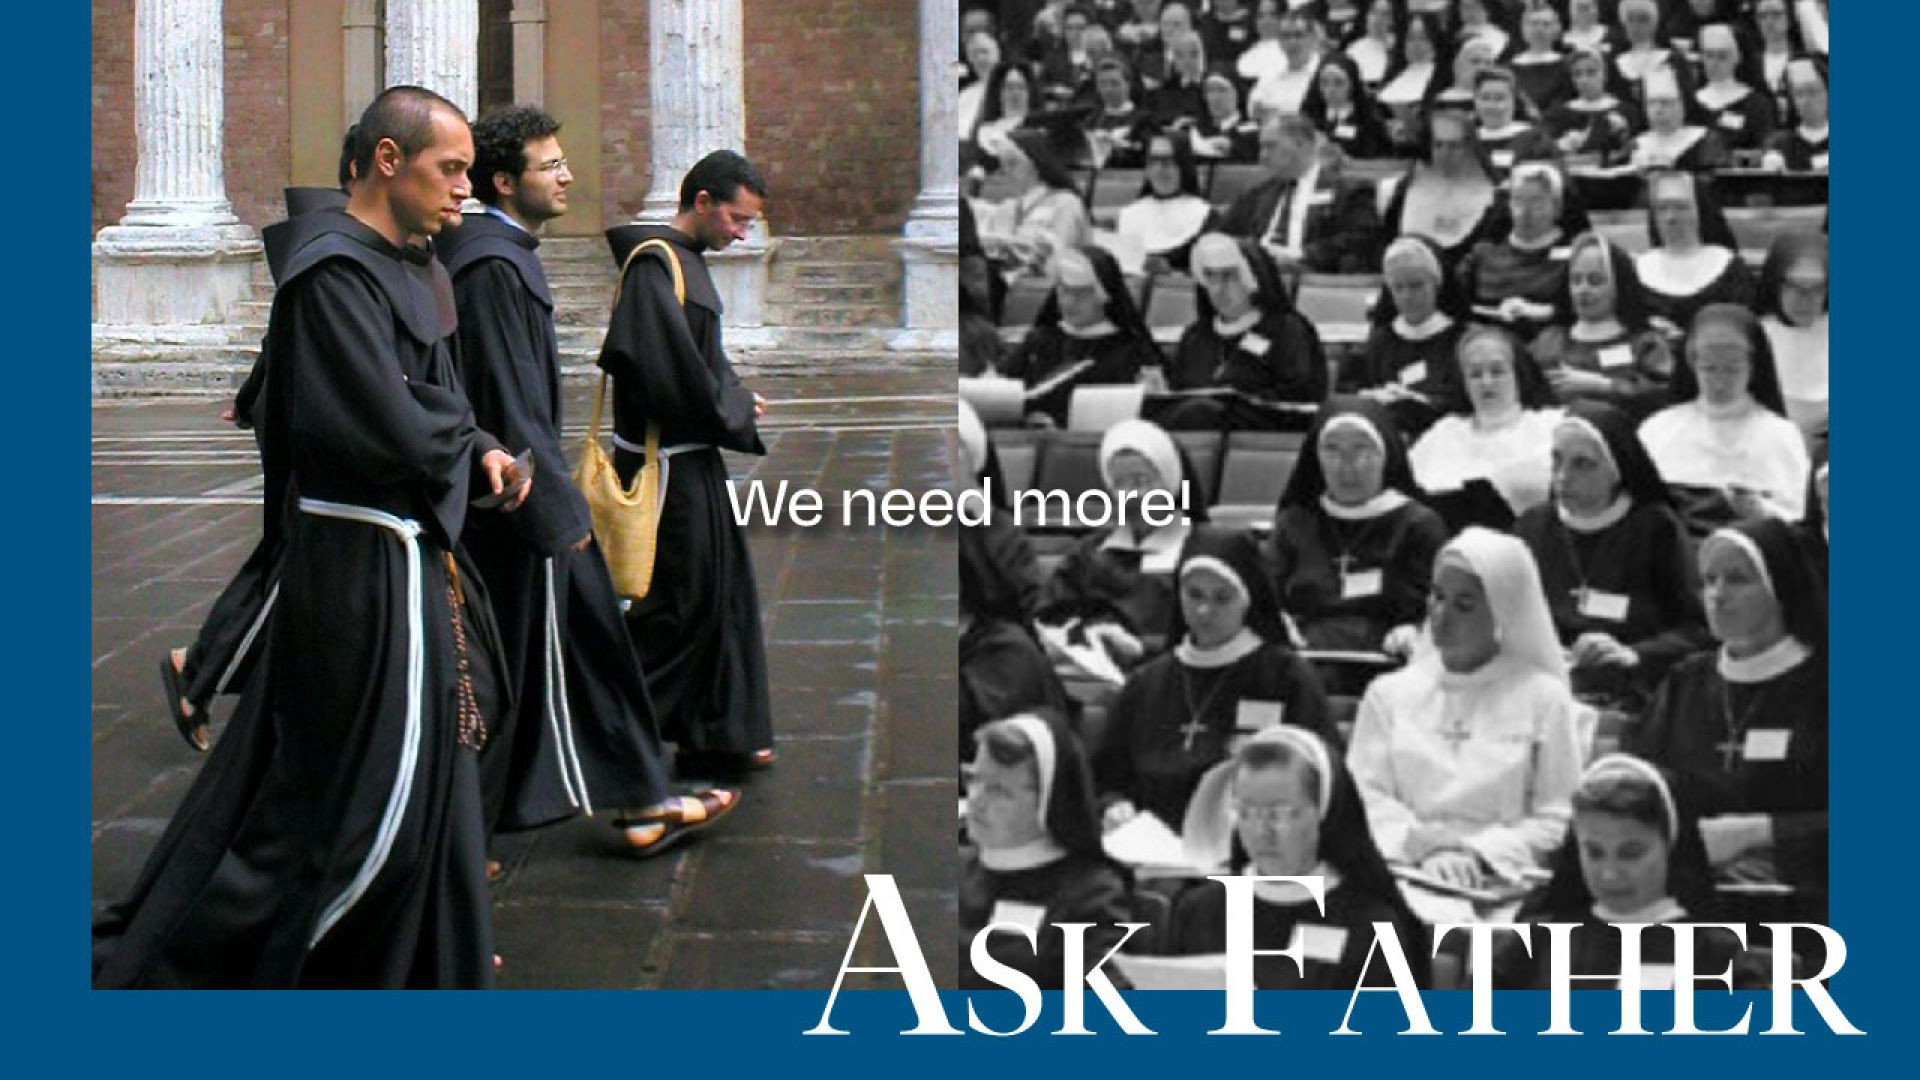 How do we get MORE religious vocations?